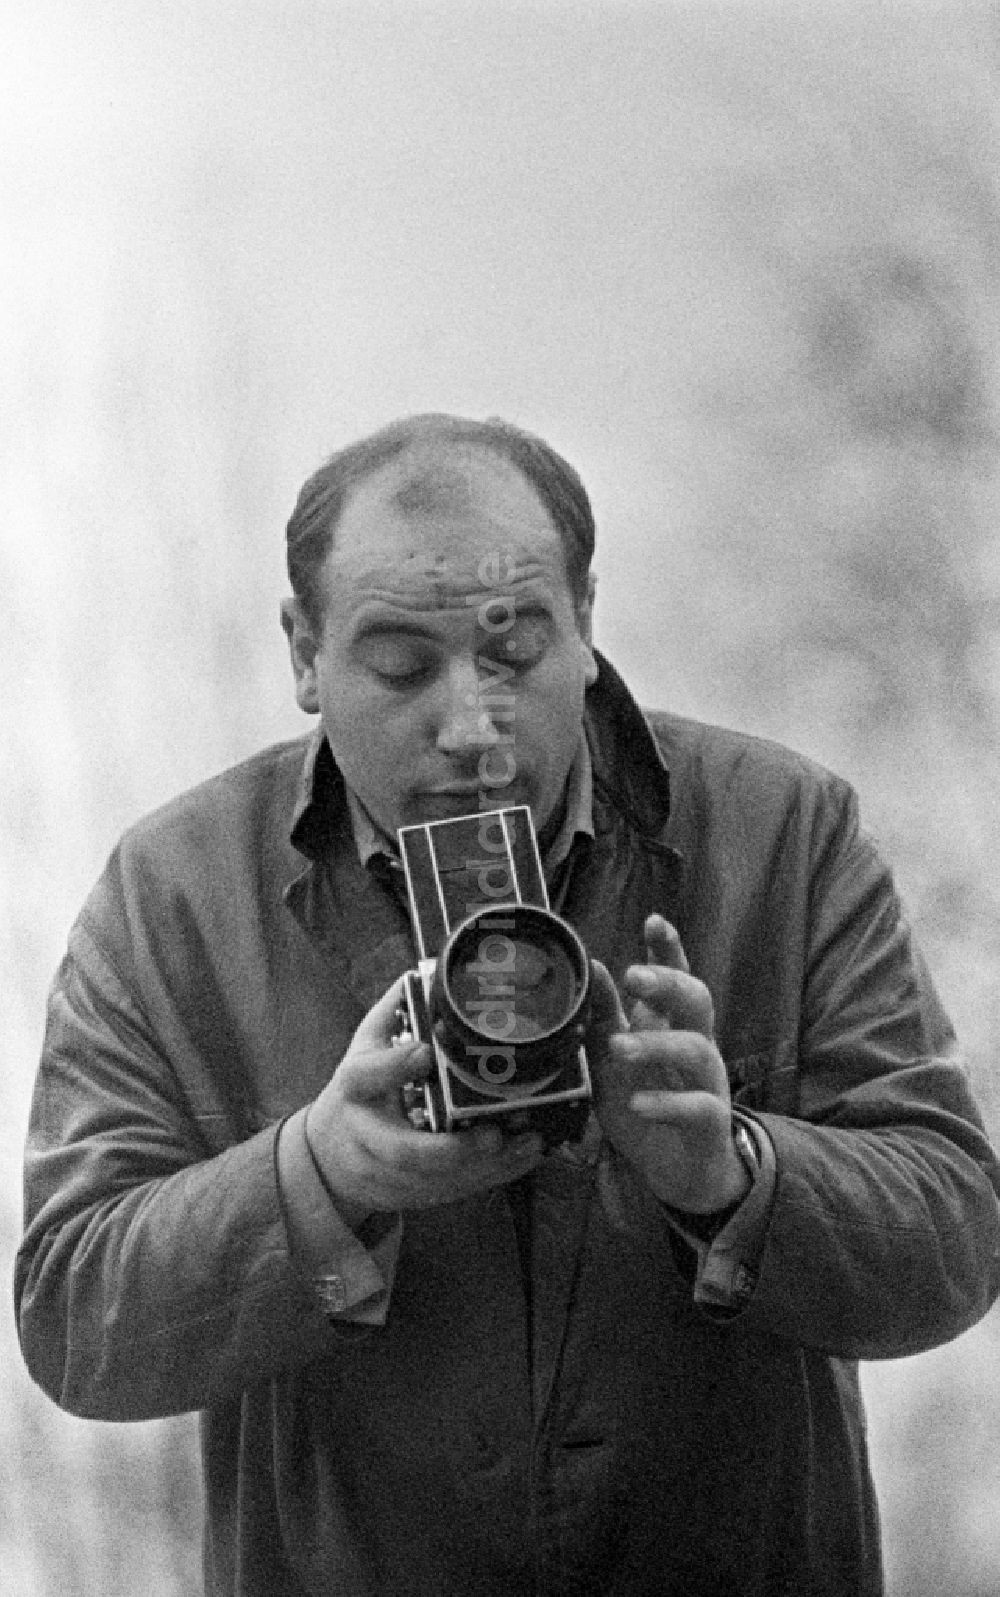 DDR-Fotoarchiv: Berlin - Schauspieler Manfred Krug im Ortsteil Mitte in Berlin, der ehemaligen Hauptstadt der DDR, Deutsche Demokratische Republik